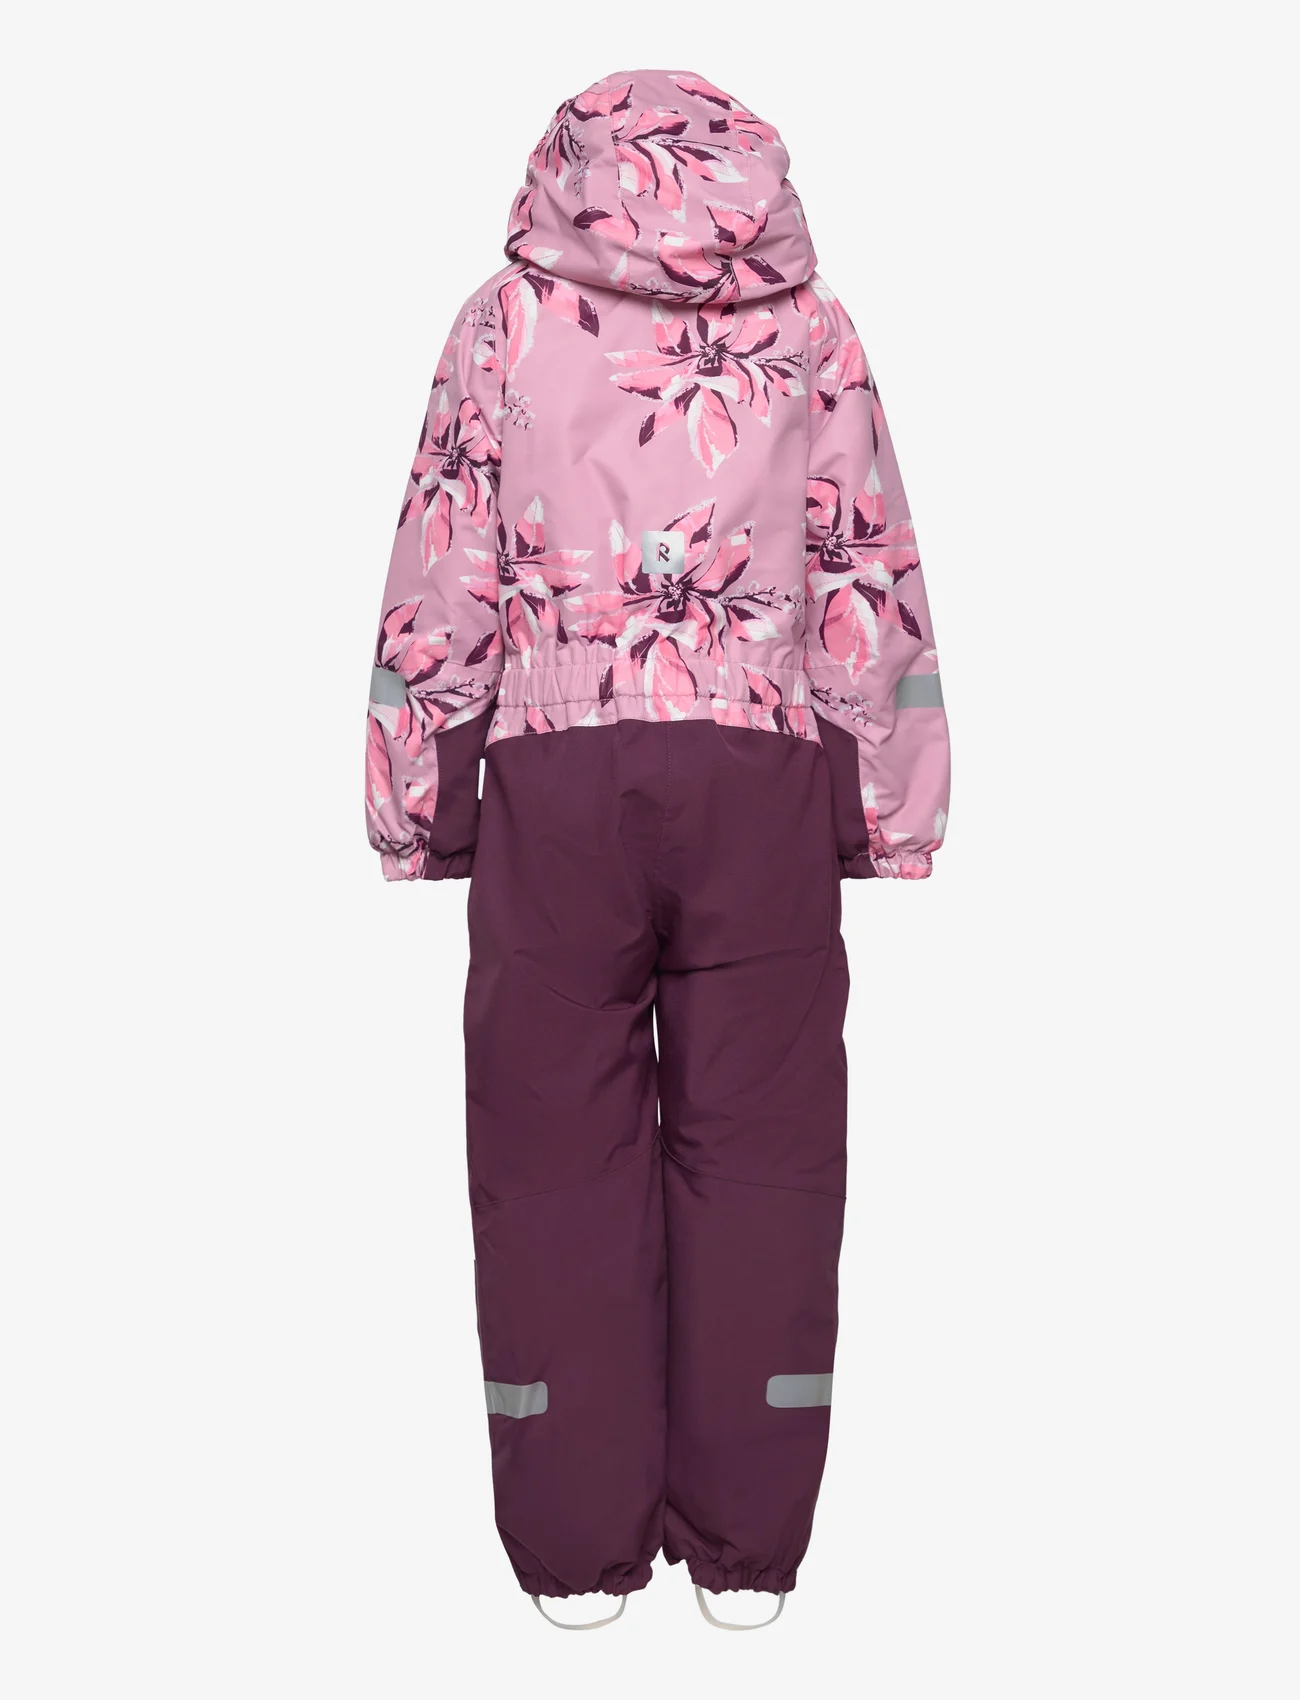 Reima - Kids' winter snowsuit Kurikka - talvihaalari - grey pink - 1